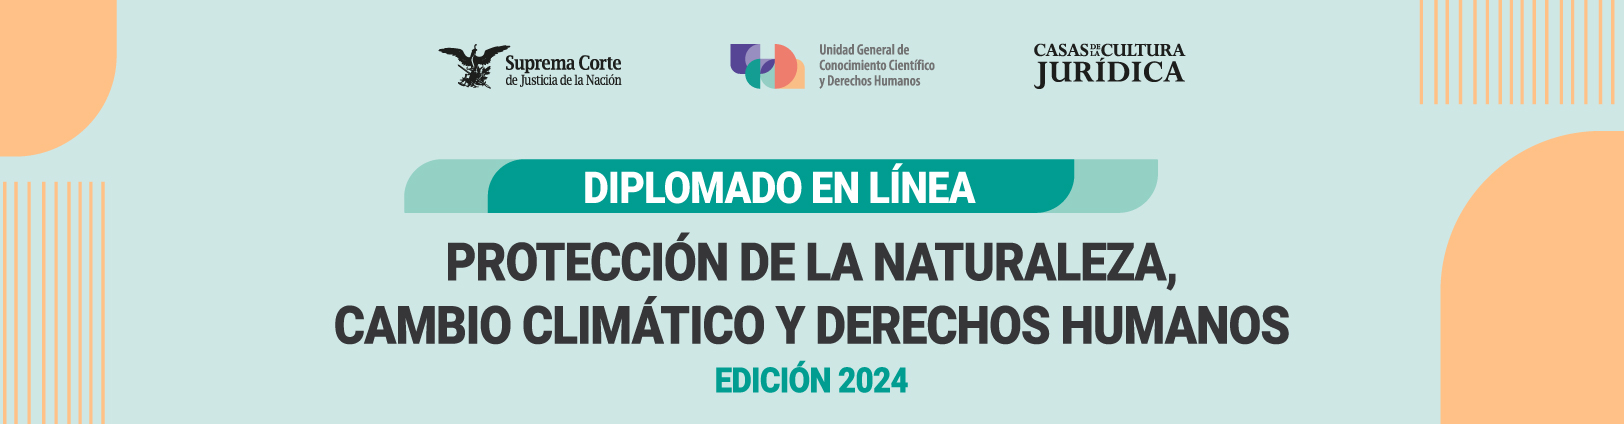 Banner del Diplomado sobre protección de la naturaleza, cambio climático y derechos humanos